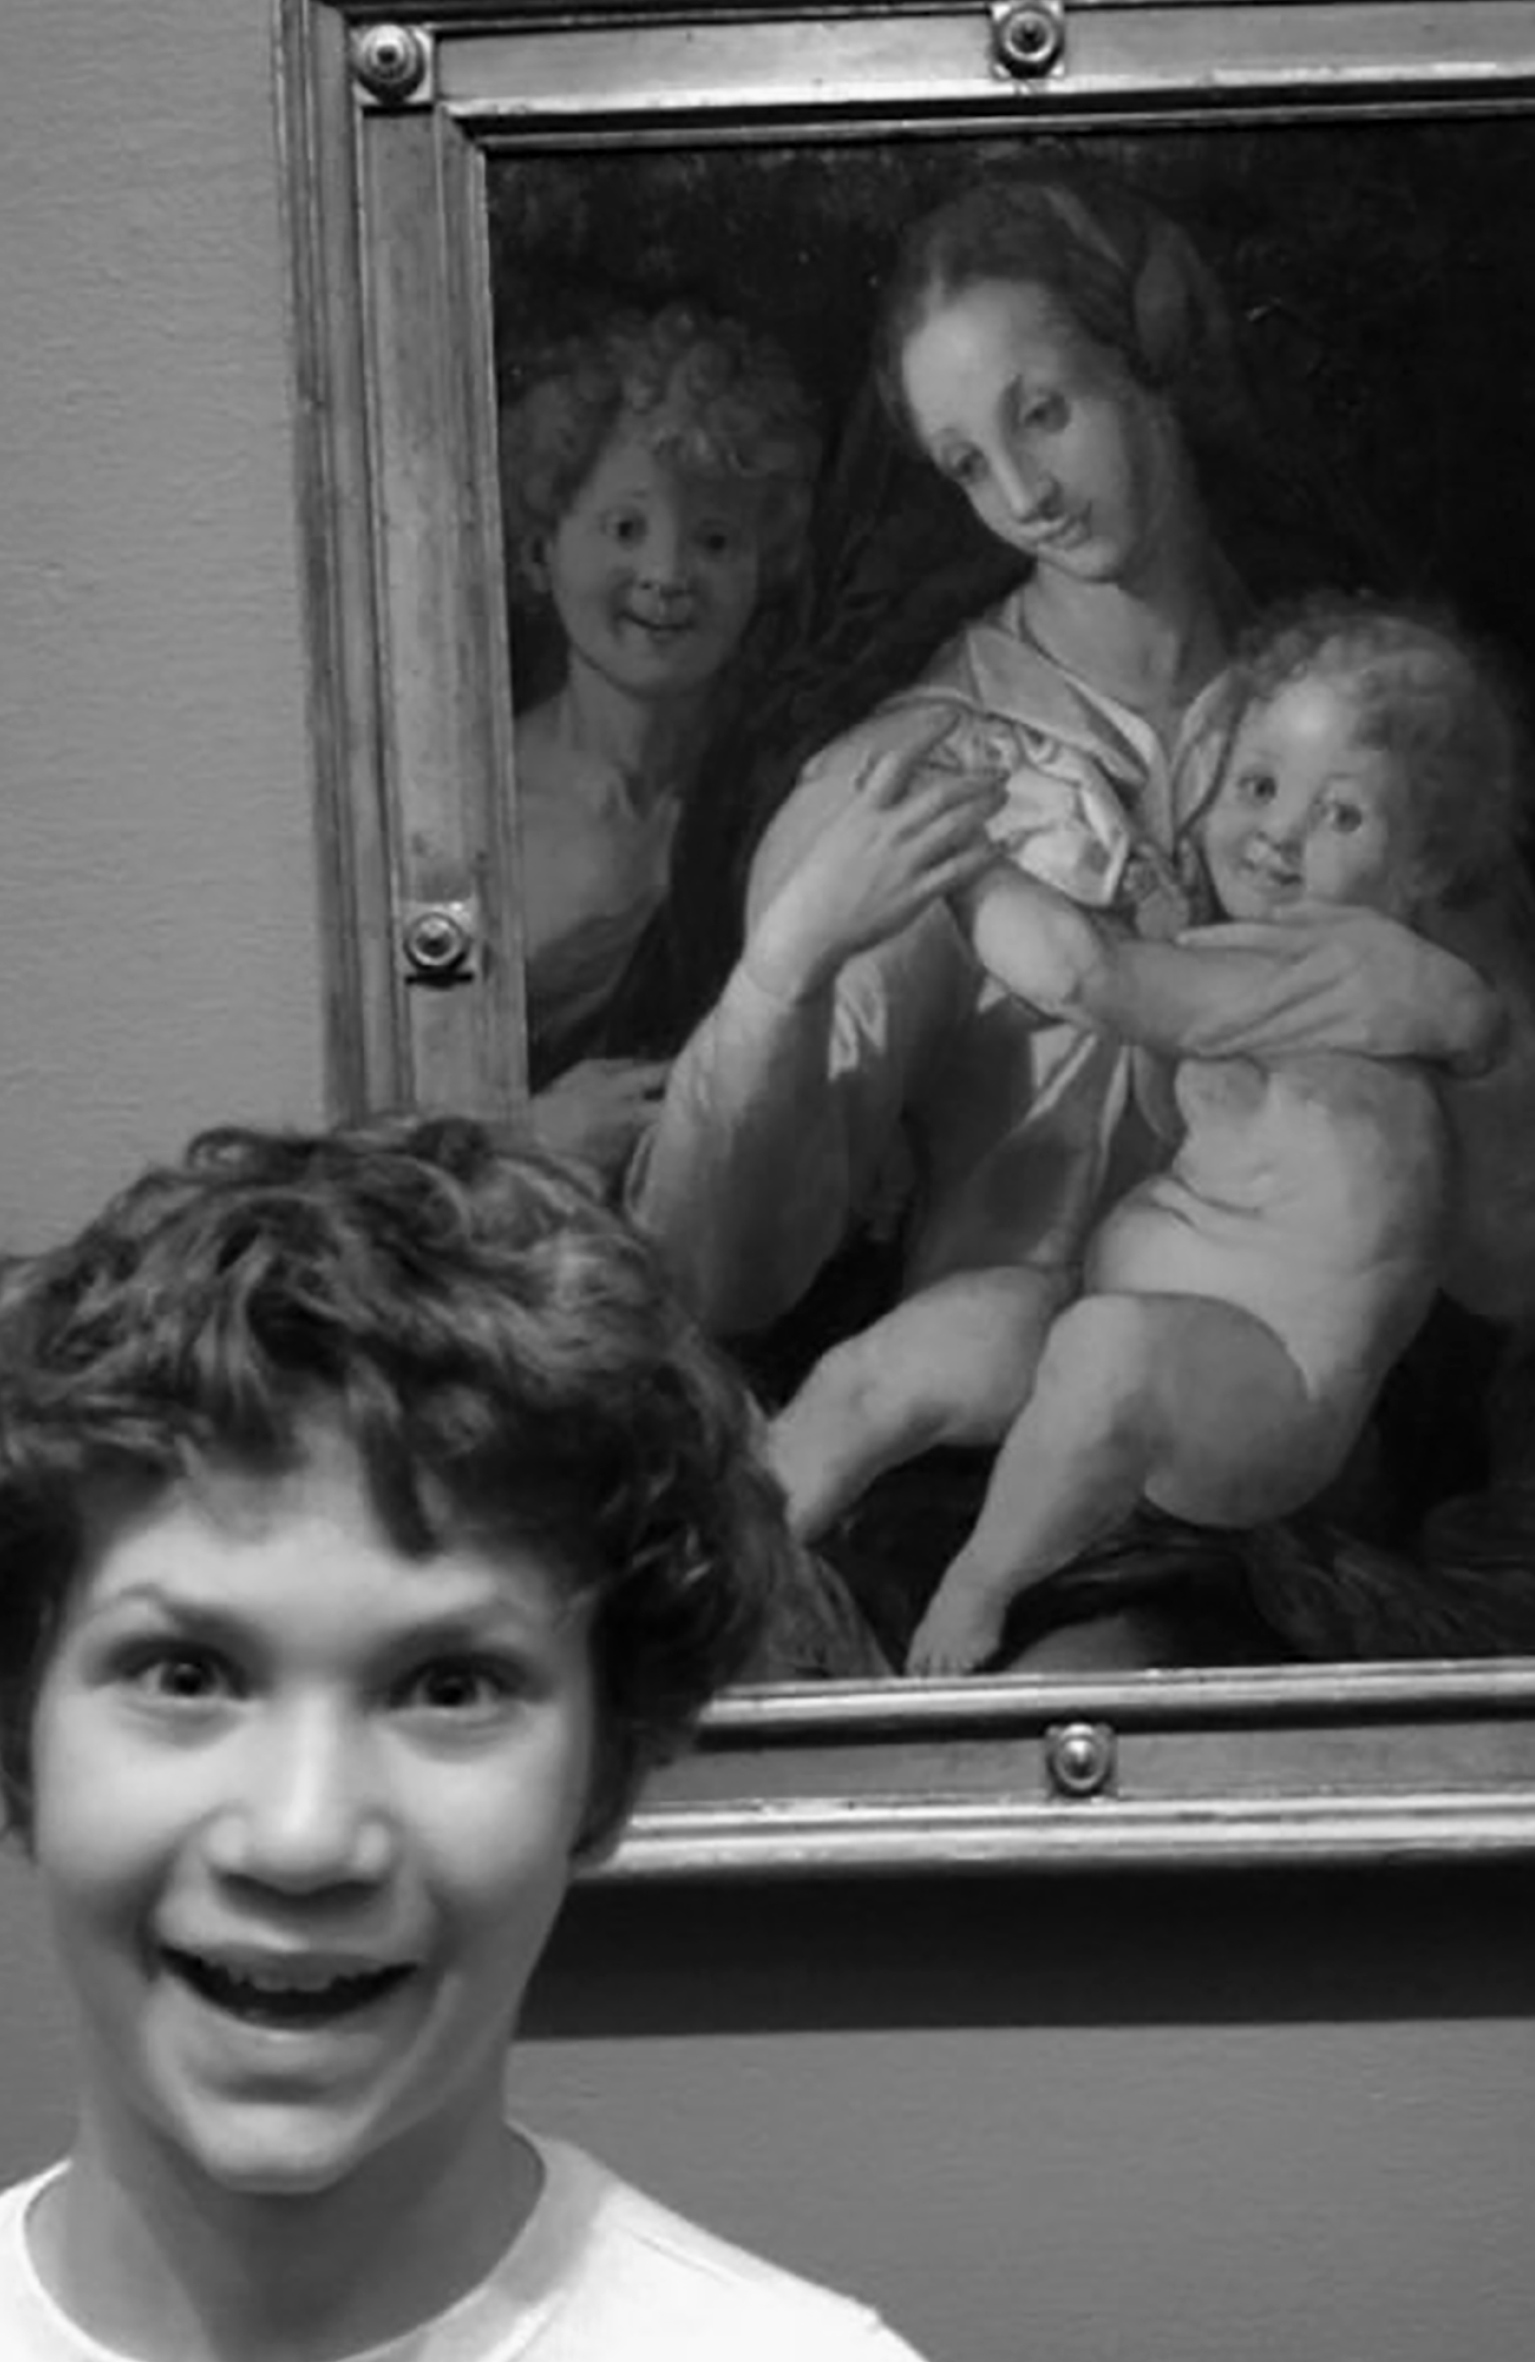 Bocah laki-laki berambut ikal memamerkan ekspresi konyol di depan lukisan anak laki-laki berambut ikal dengan ekspresi konyol